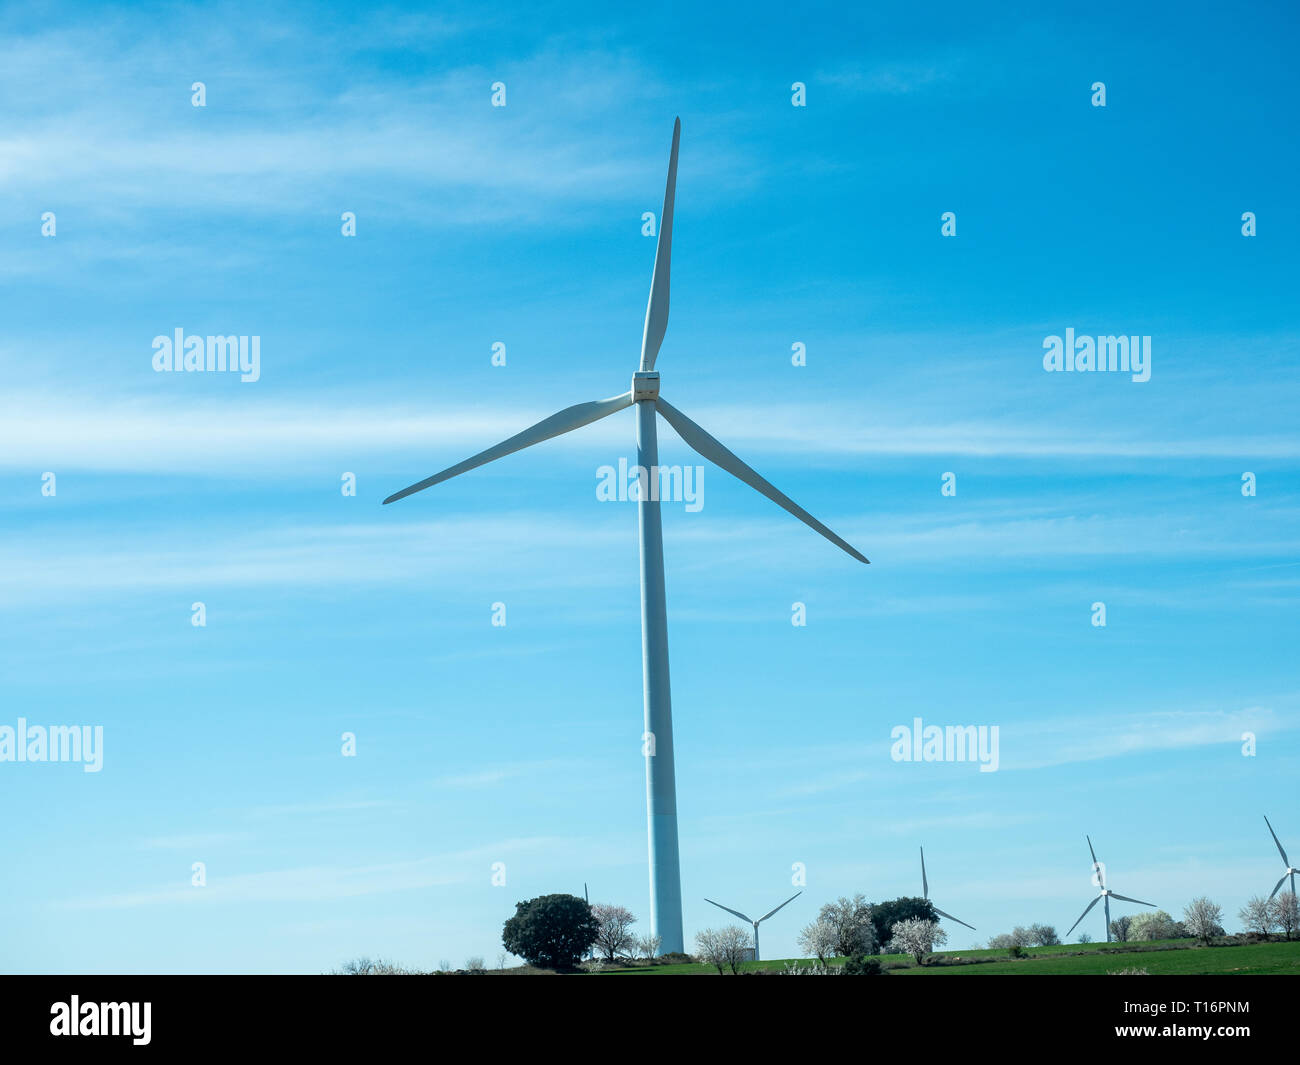 Bilder der Windenergie Mühlen aus dem Auto auf der Autobahn Stockfotografie  - Alamy